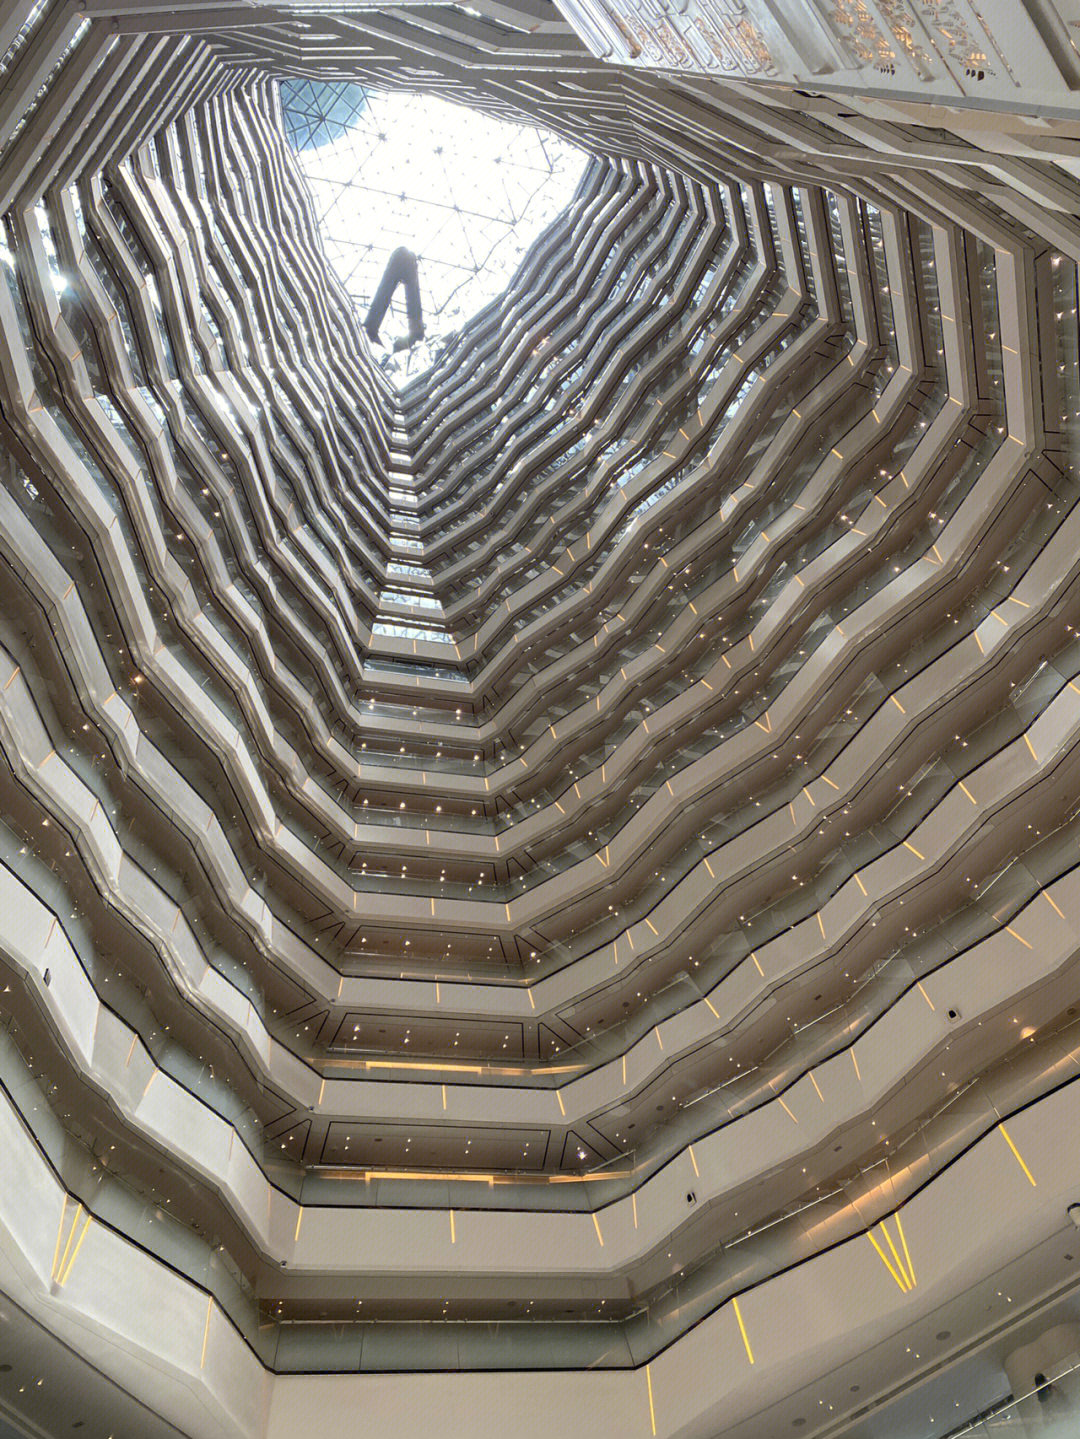 国内最高的酒店,70层空中大堂,最高100层;2